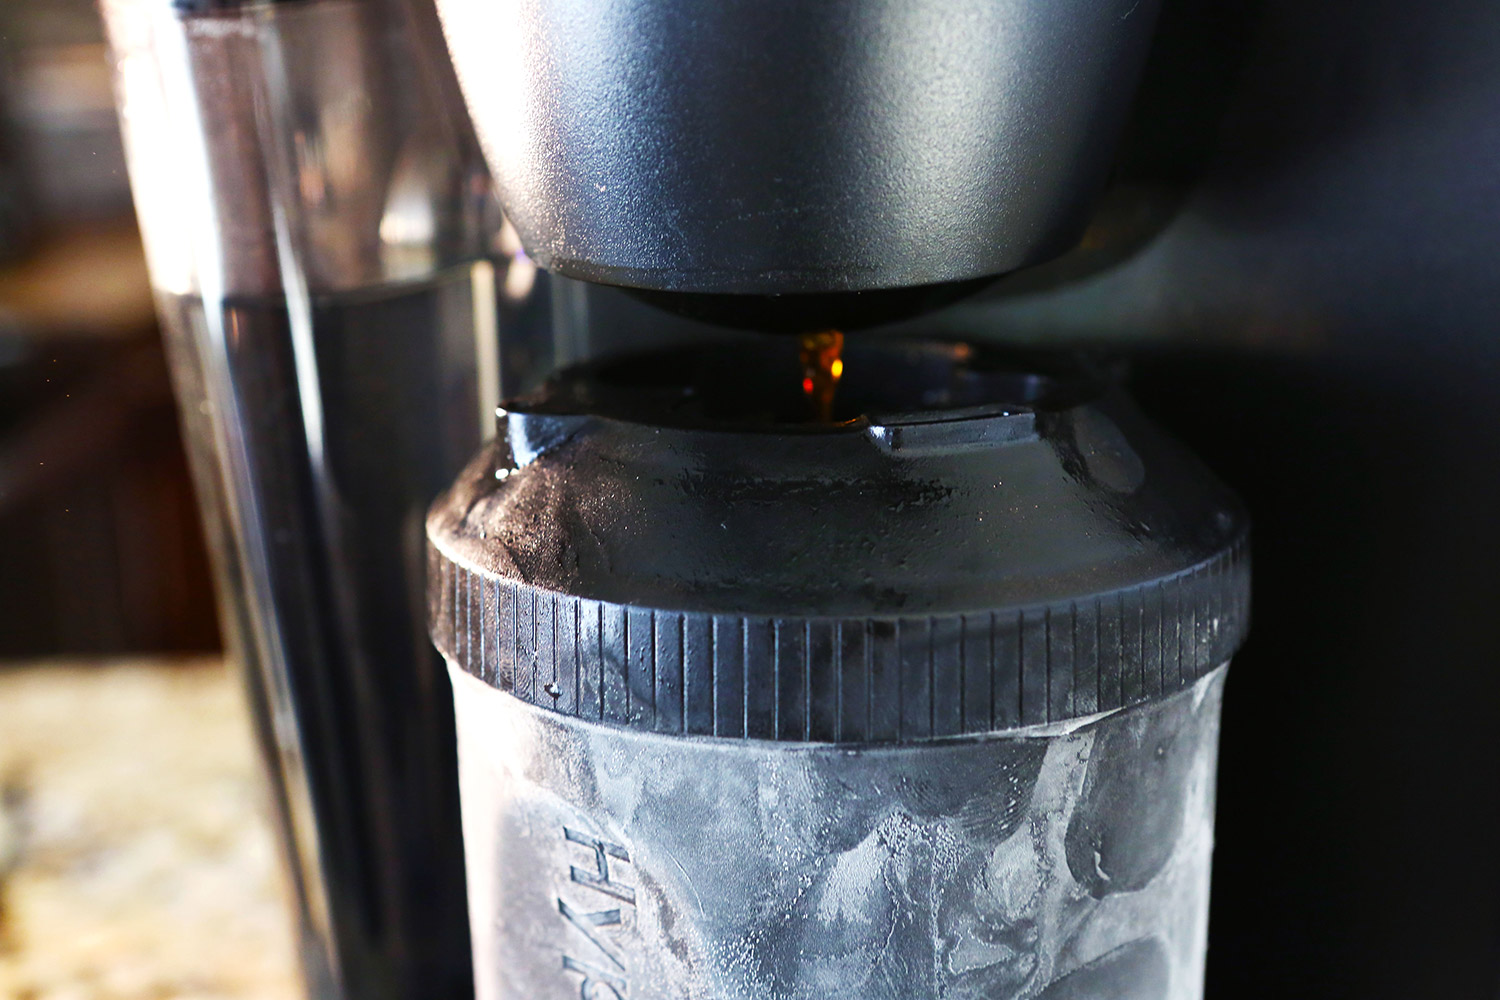 hyperchiller iced coffee maker brewk300